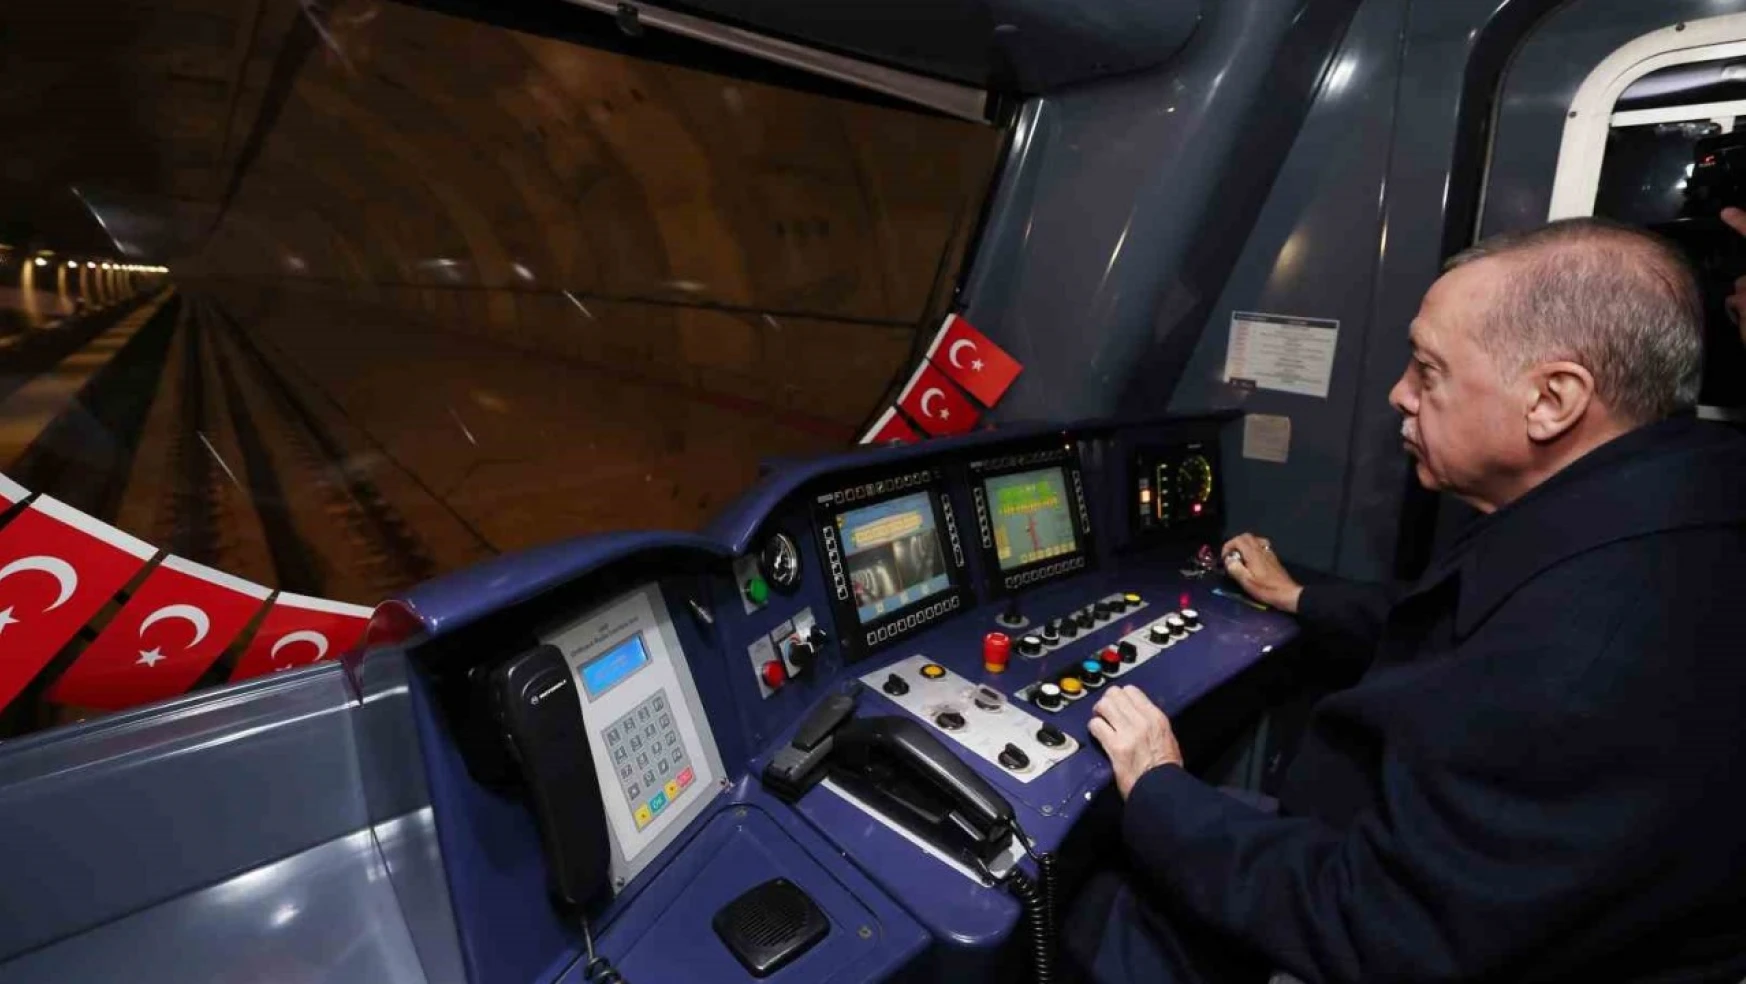 Cumhurbaşkanı Erdoğan İstanbul'da yeni metro hattının test sürüşünü yaptı